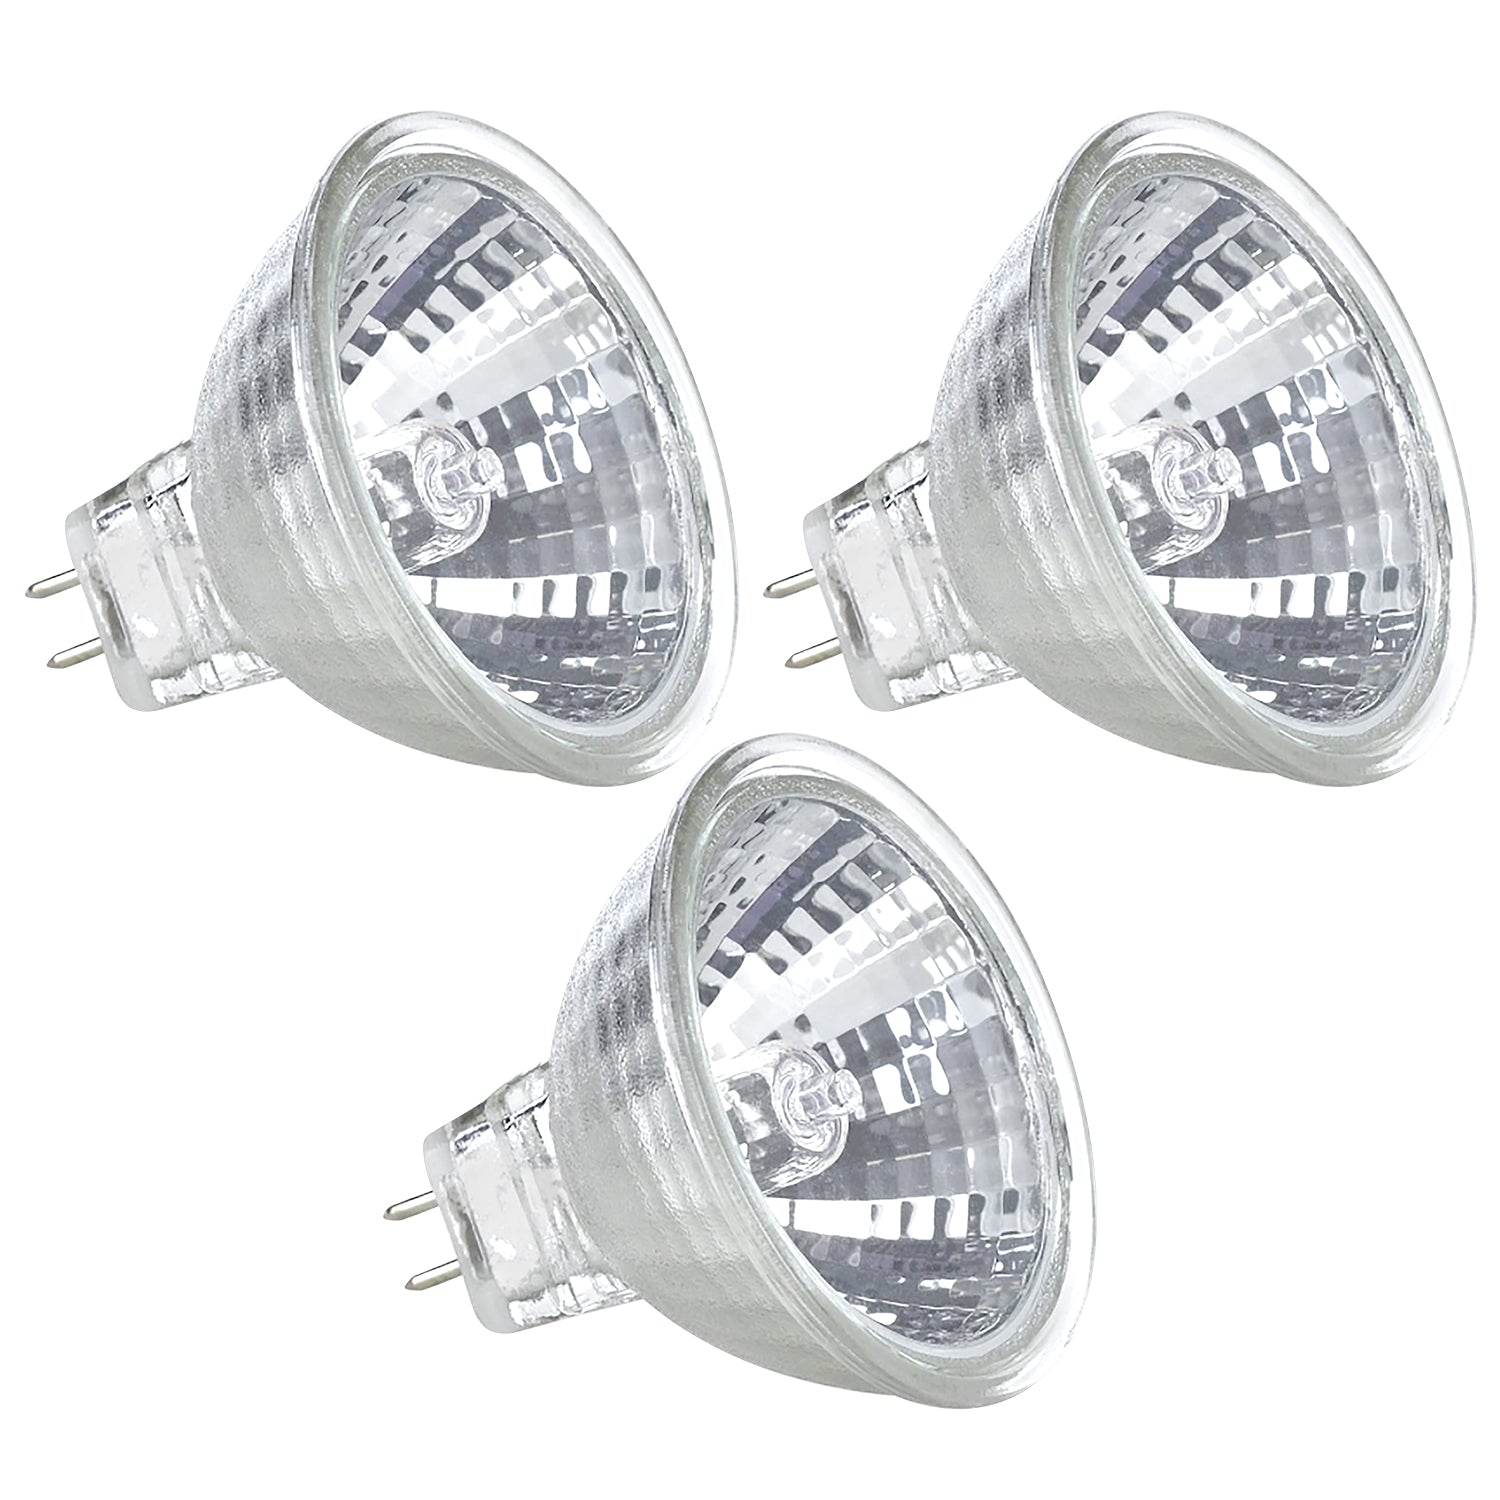 12V 50WHalogen Light Bulb MR16 Spot Lamp BiPin GU53 - 12VMonster Lighting